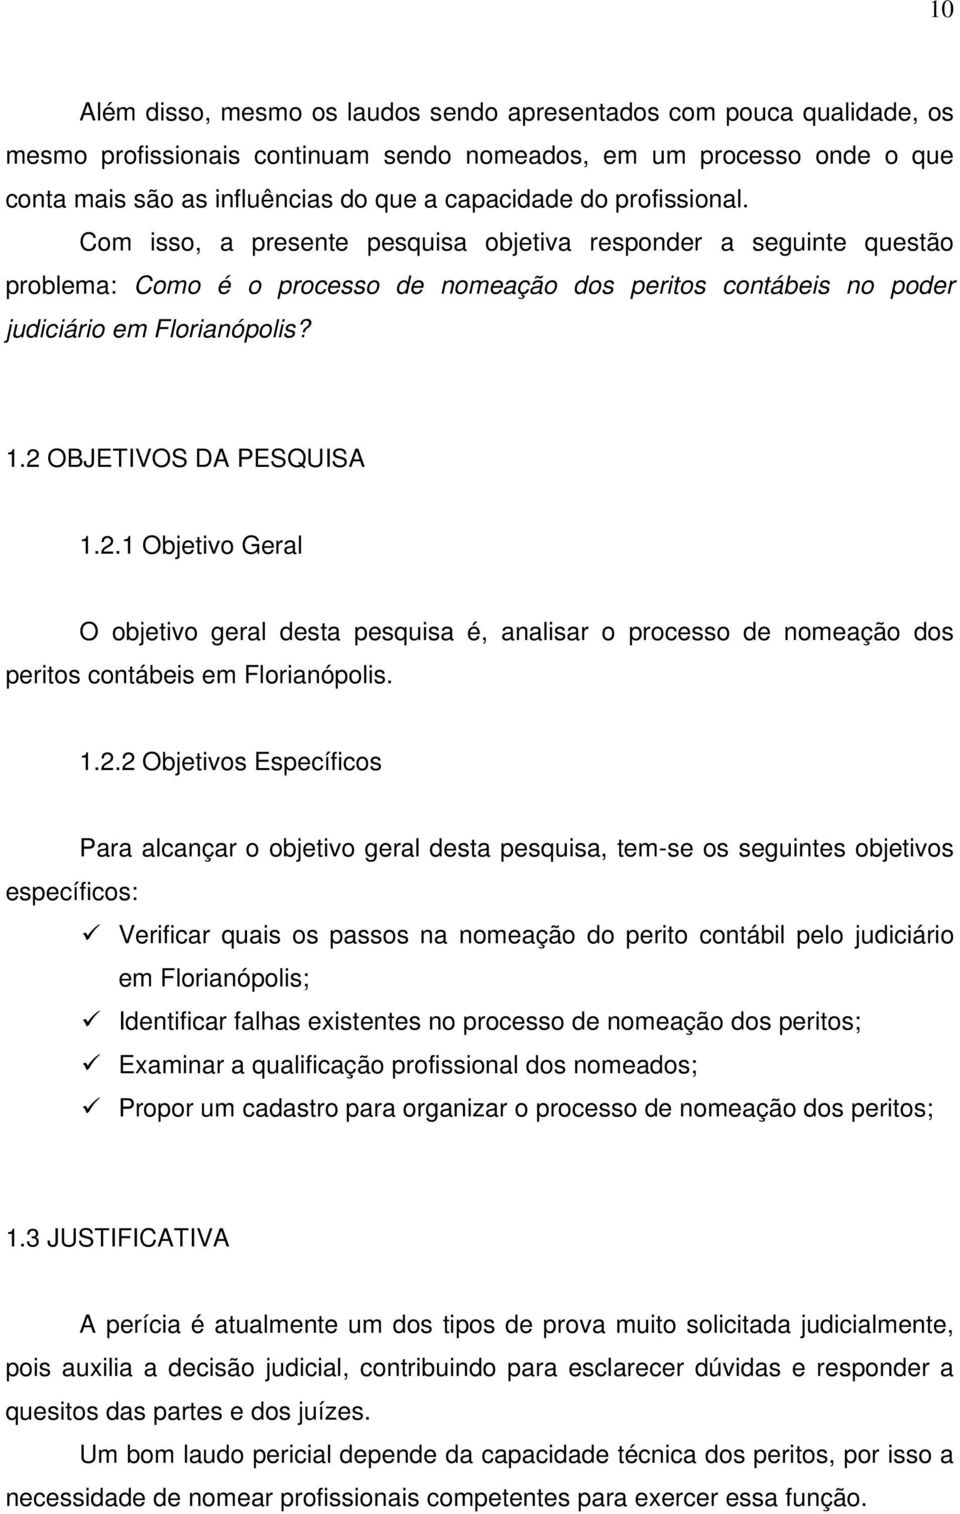 2 OBJETIVOS DA PESQUISA 1.2.1 Objetivo Geral O objetivo geral desta pesquisa é, analisar o processo de nomeação dos peritos contábeis em Florianópolis. 1.2.2 Objetivos Específicos Para alcançar o